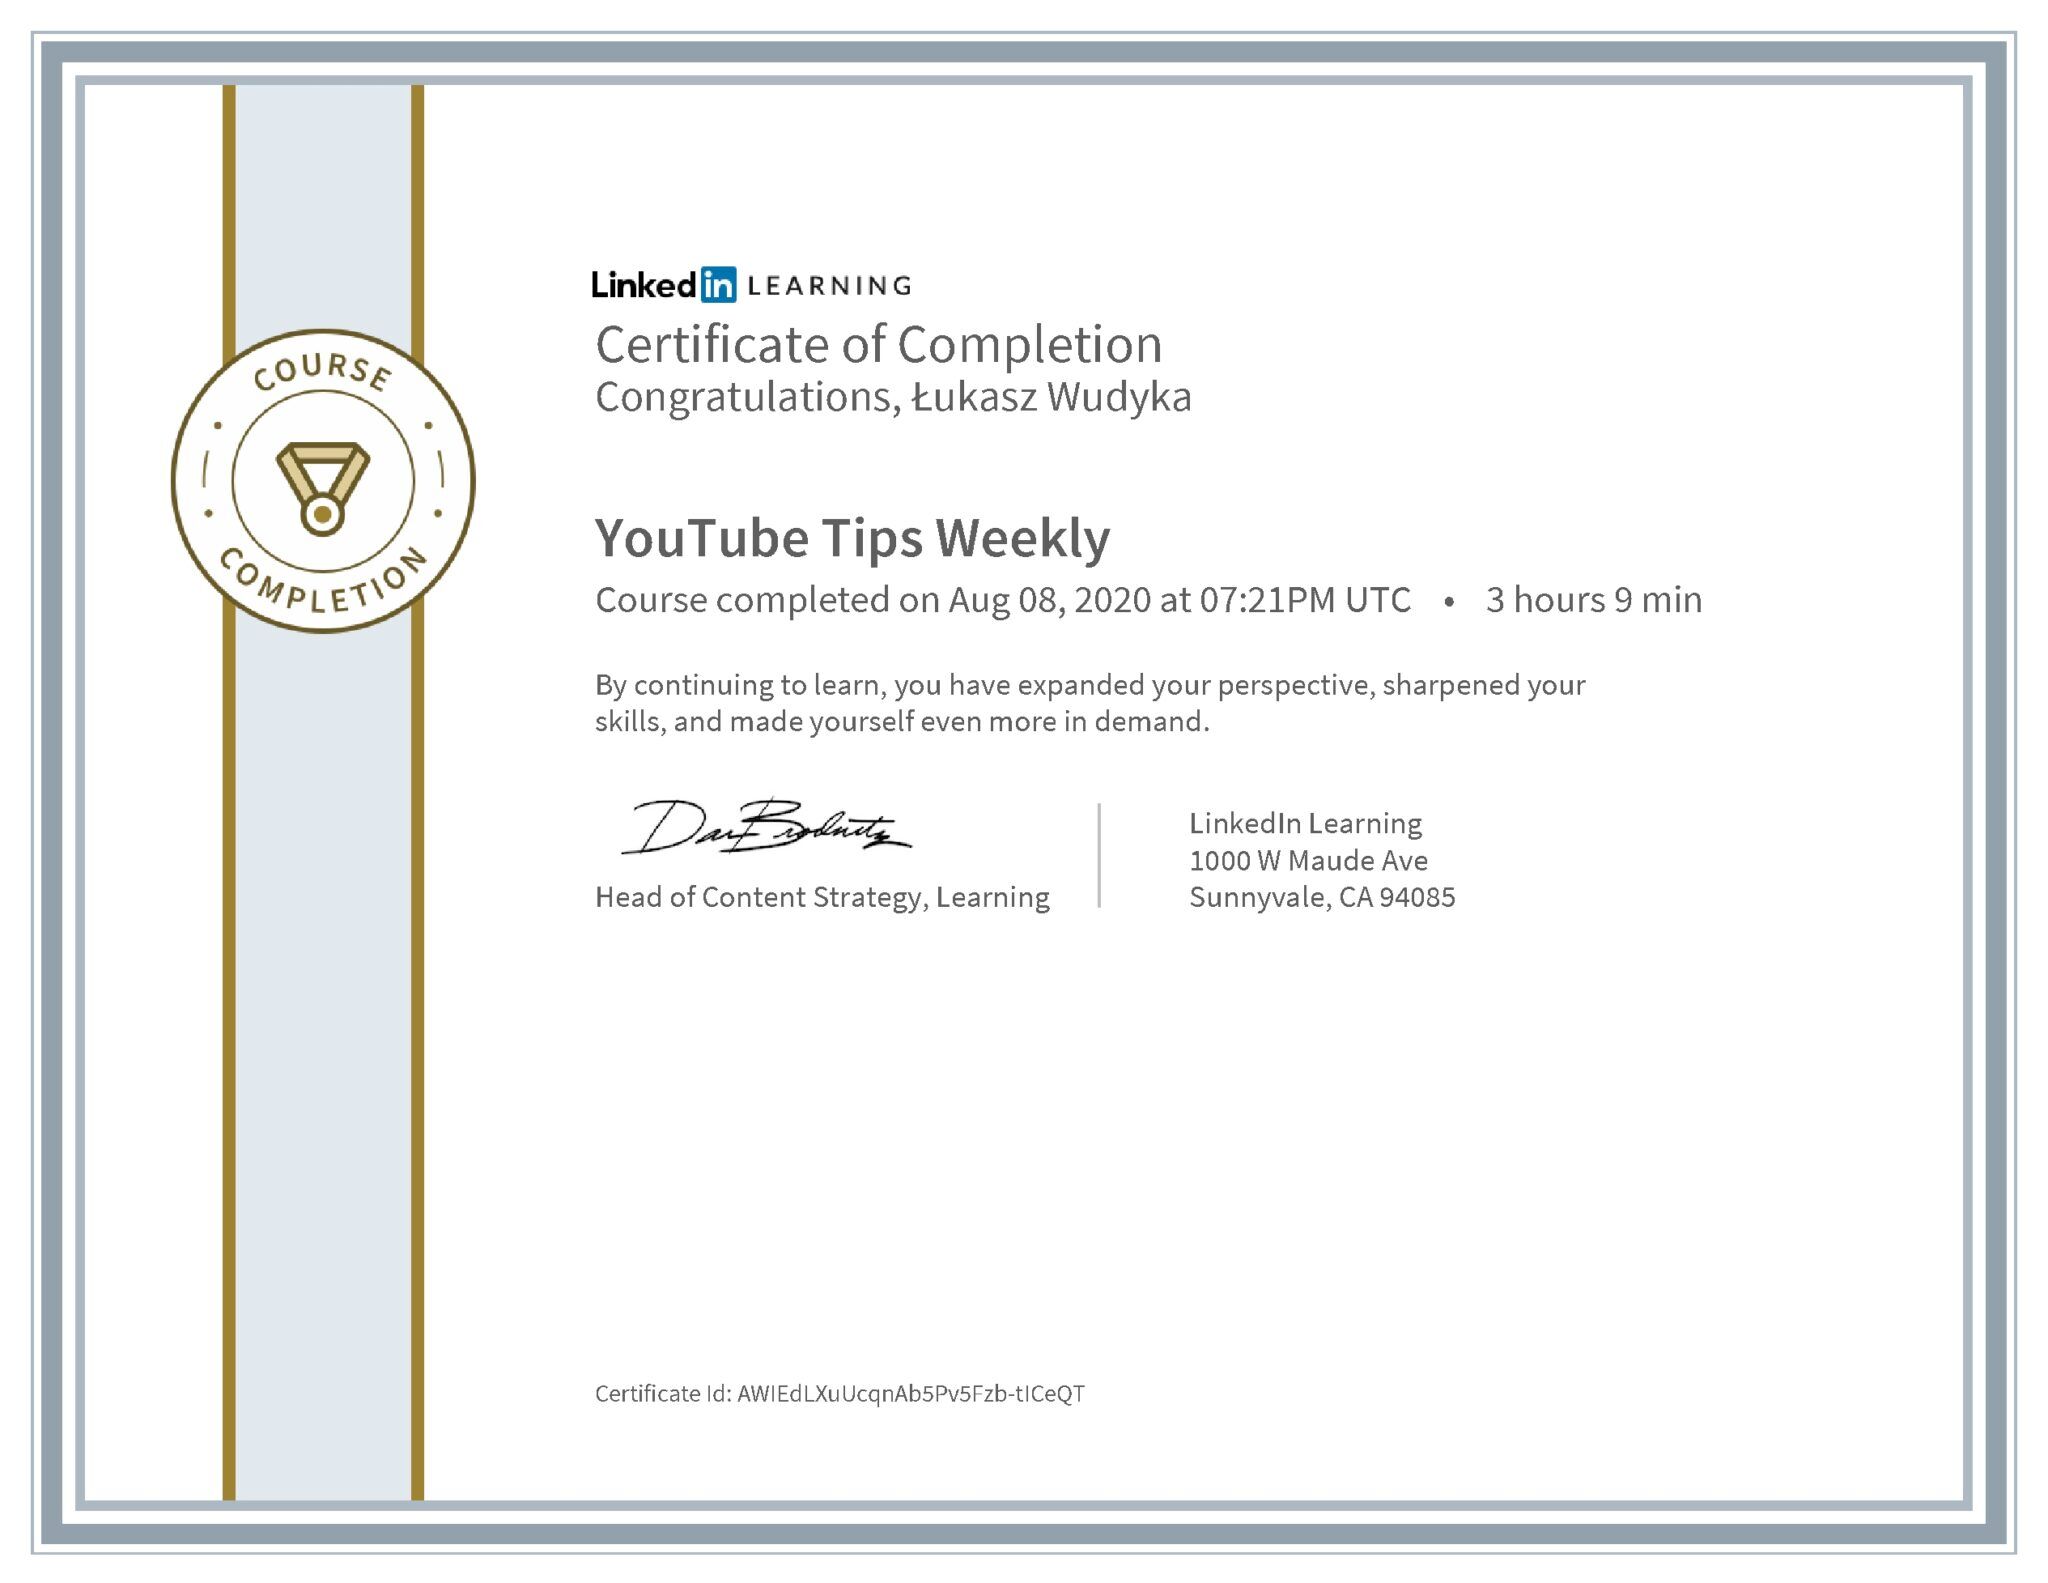 Łukasz Wudyka certyfikat LinkedIn YouTube Tips Weekly